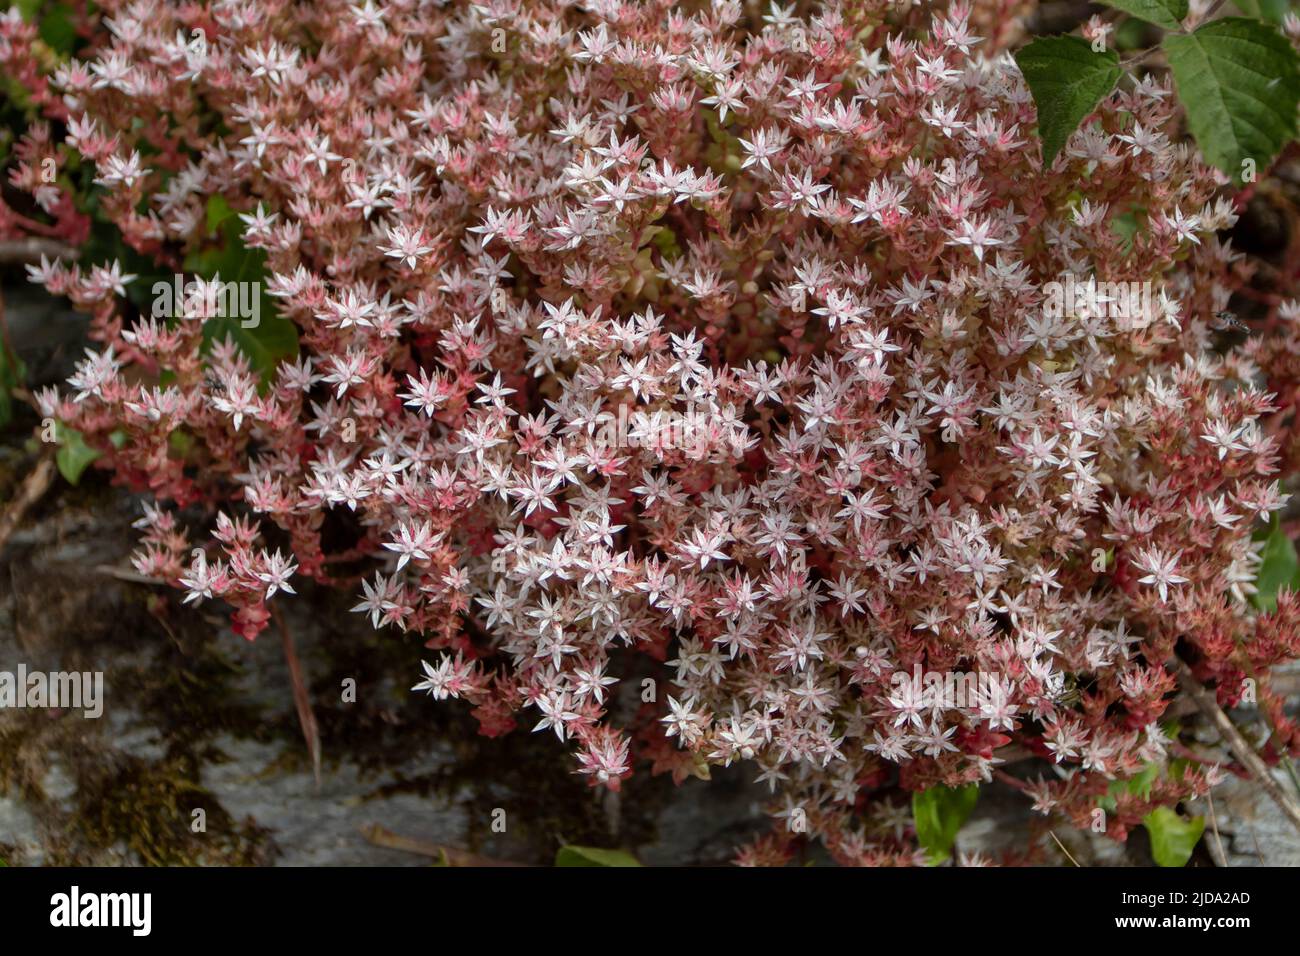 Sedum anglicum o planta de piedra inglesa Crassulaceae cubierta con flores blancas y rosadas en forma de estrella en la roca cerca de Luarca, Asturias, España. Foto de stock